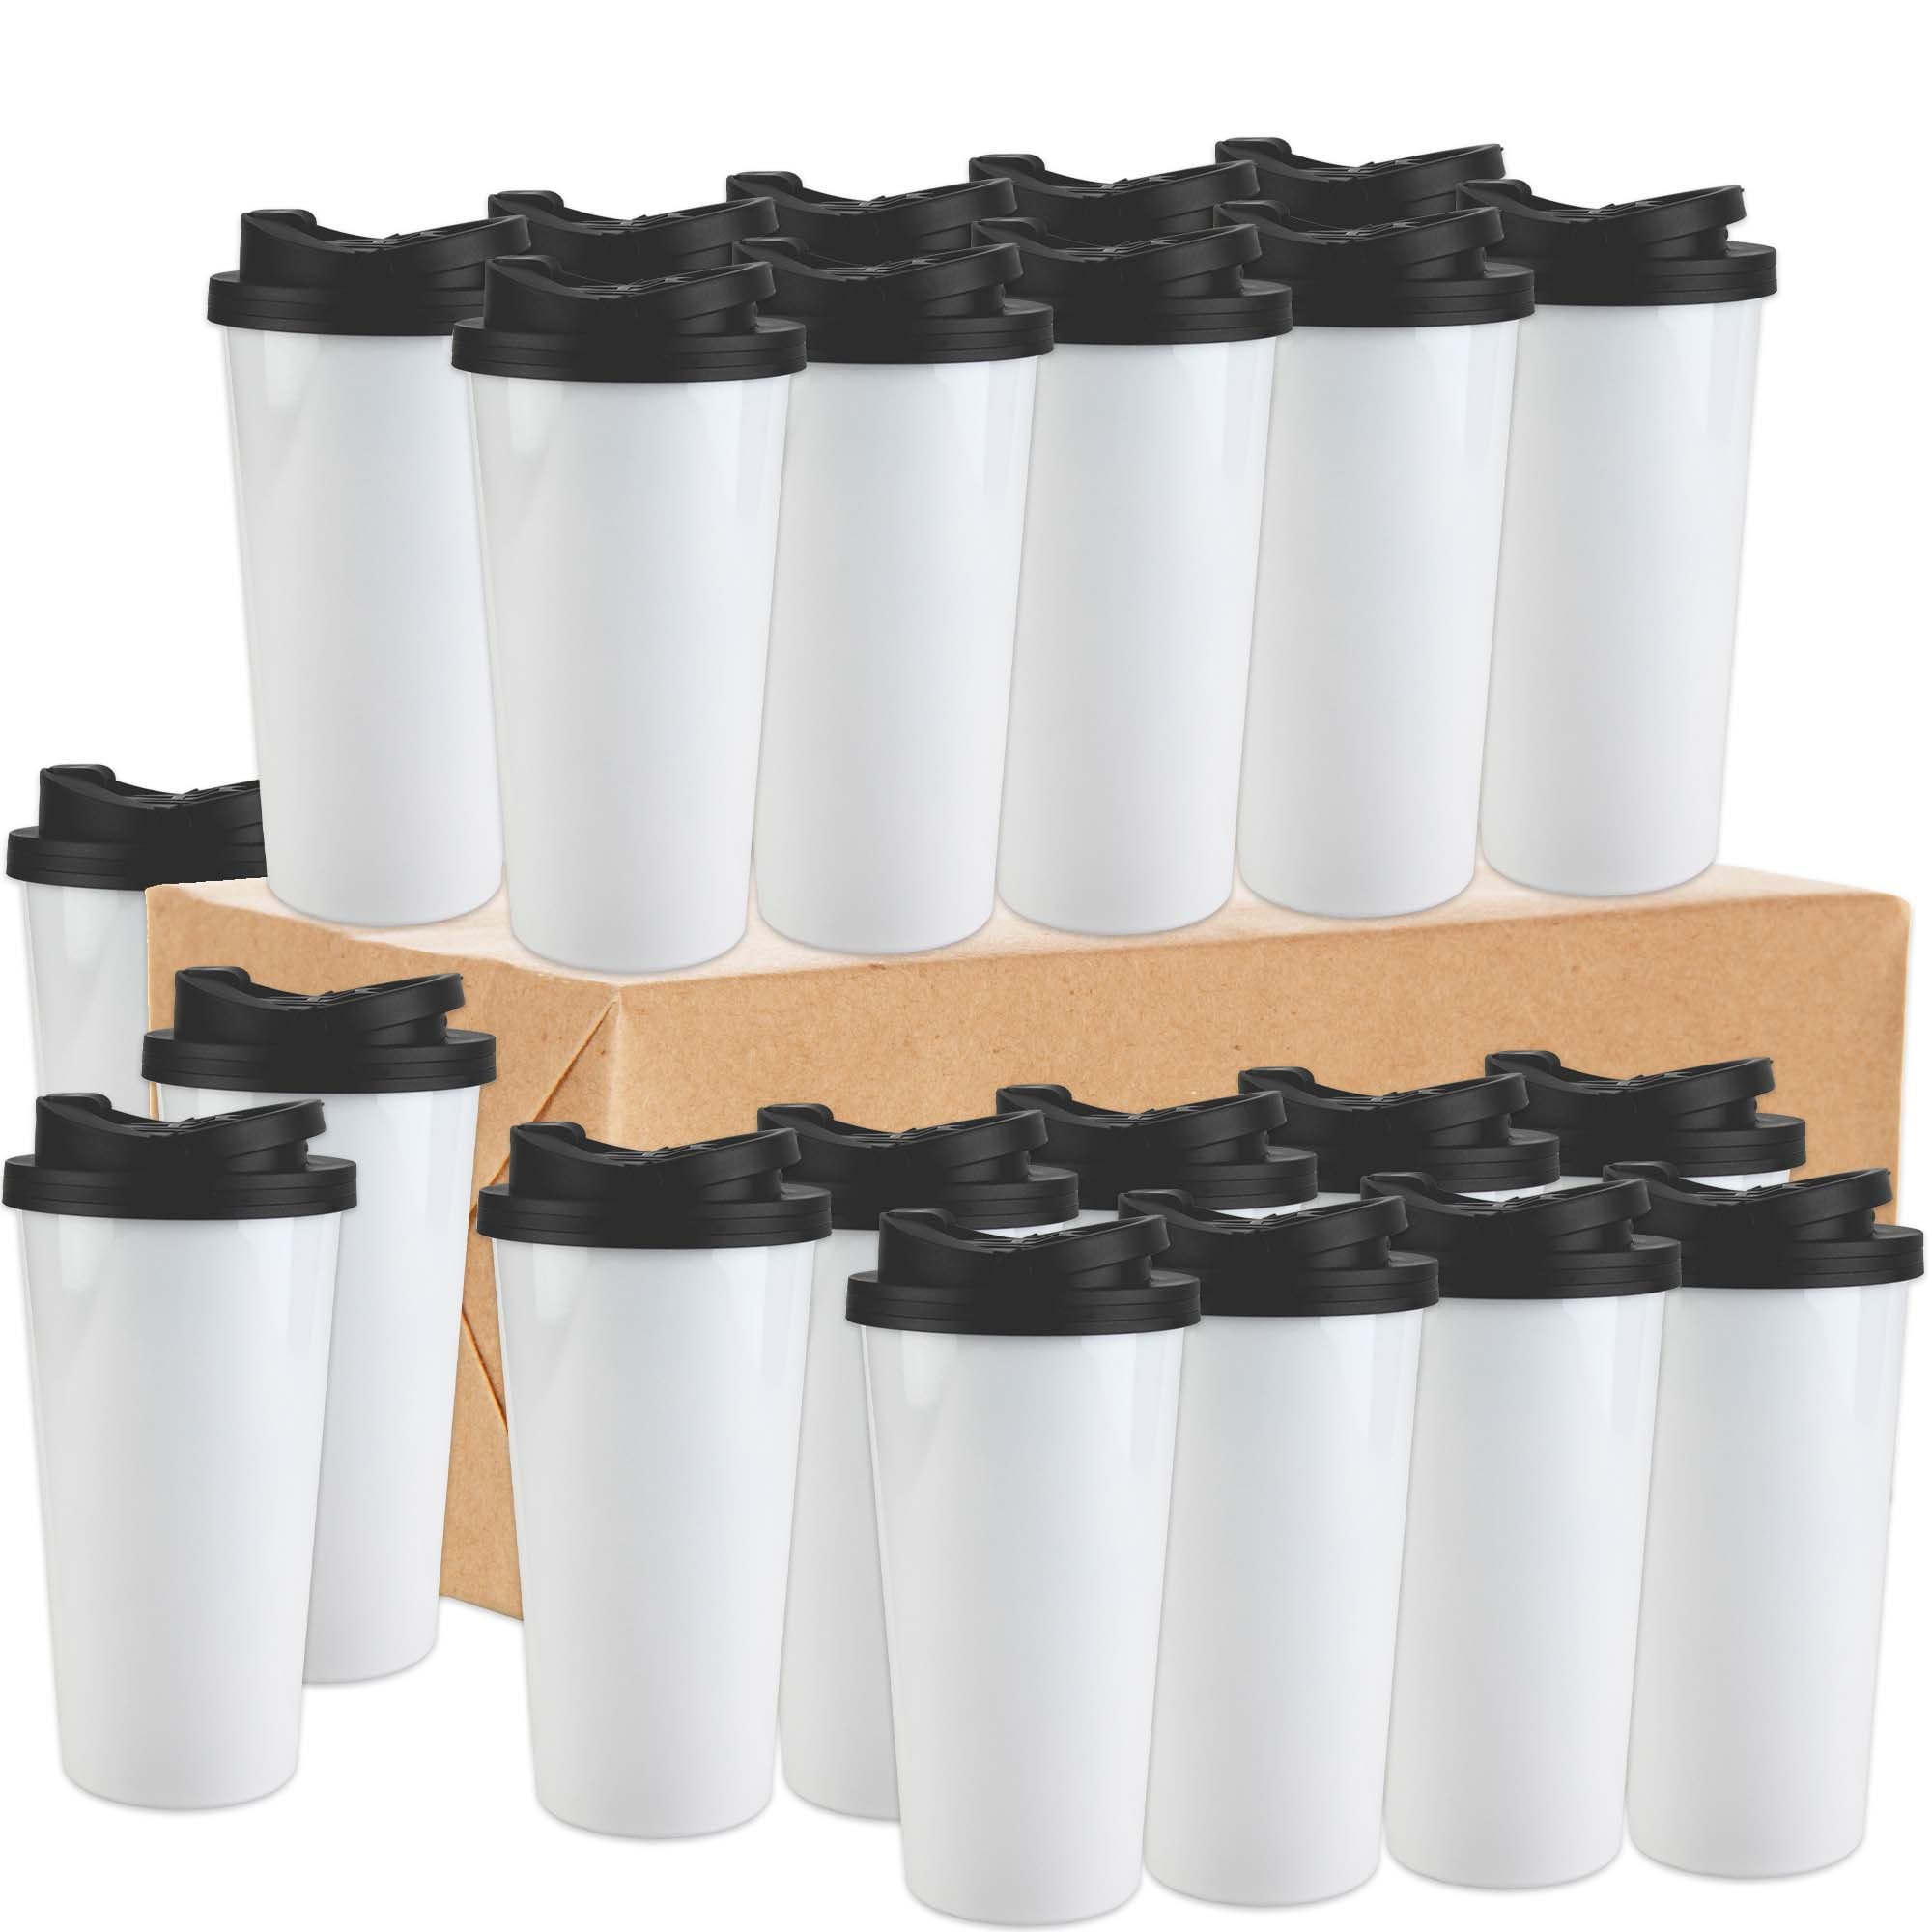 Conde Premium Mugs Bulk Sublimation Blank Ceramic Mug Black With White  Panel, 11oz case of 36 